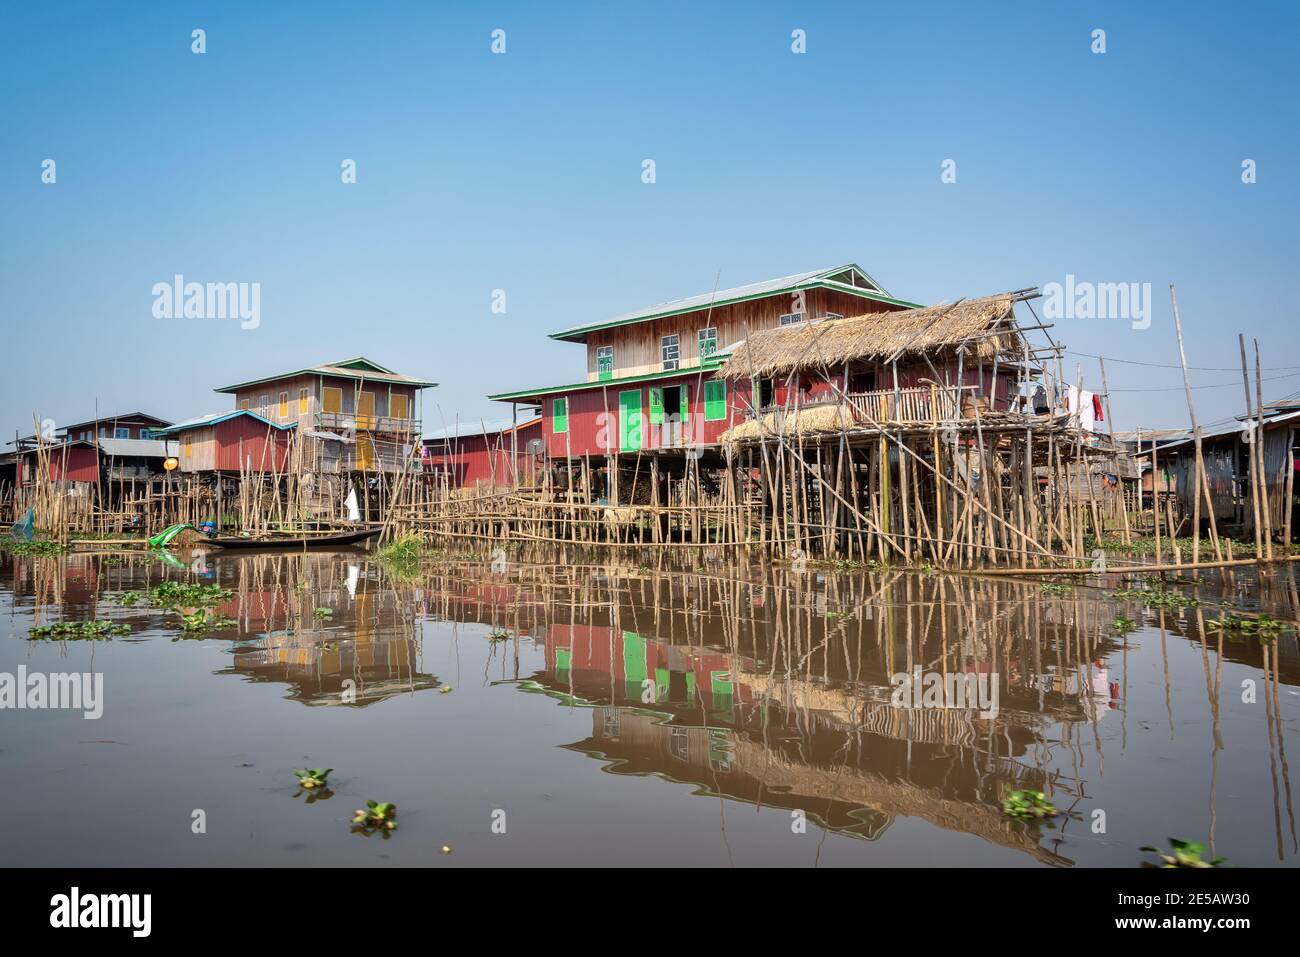 Villaggio galleggiante colorato con case-palafitte in Birmania, Myanmar Foto Stock